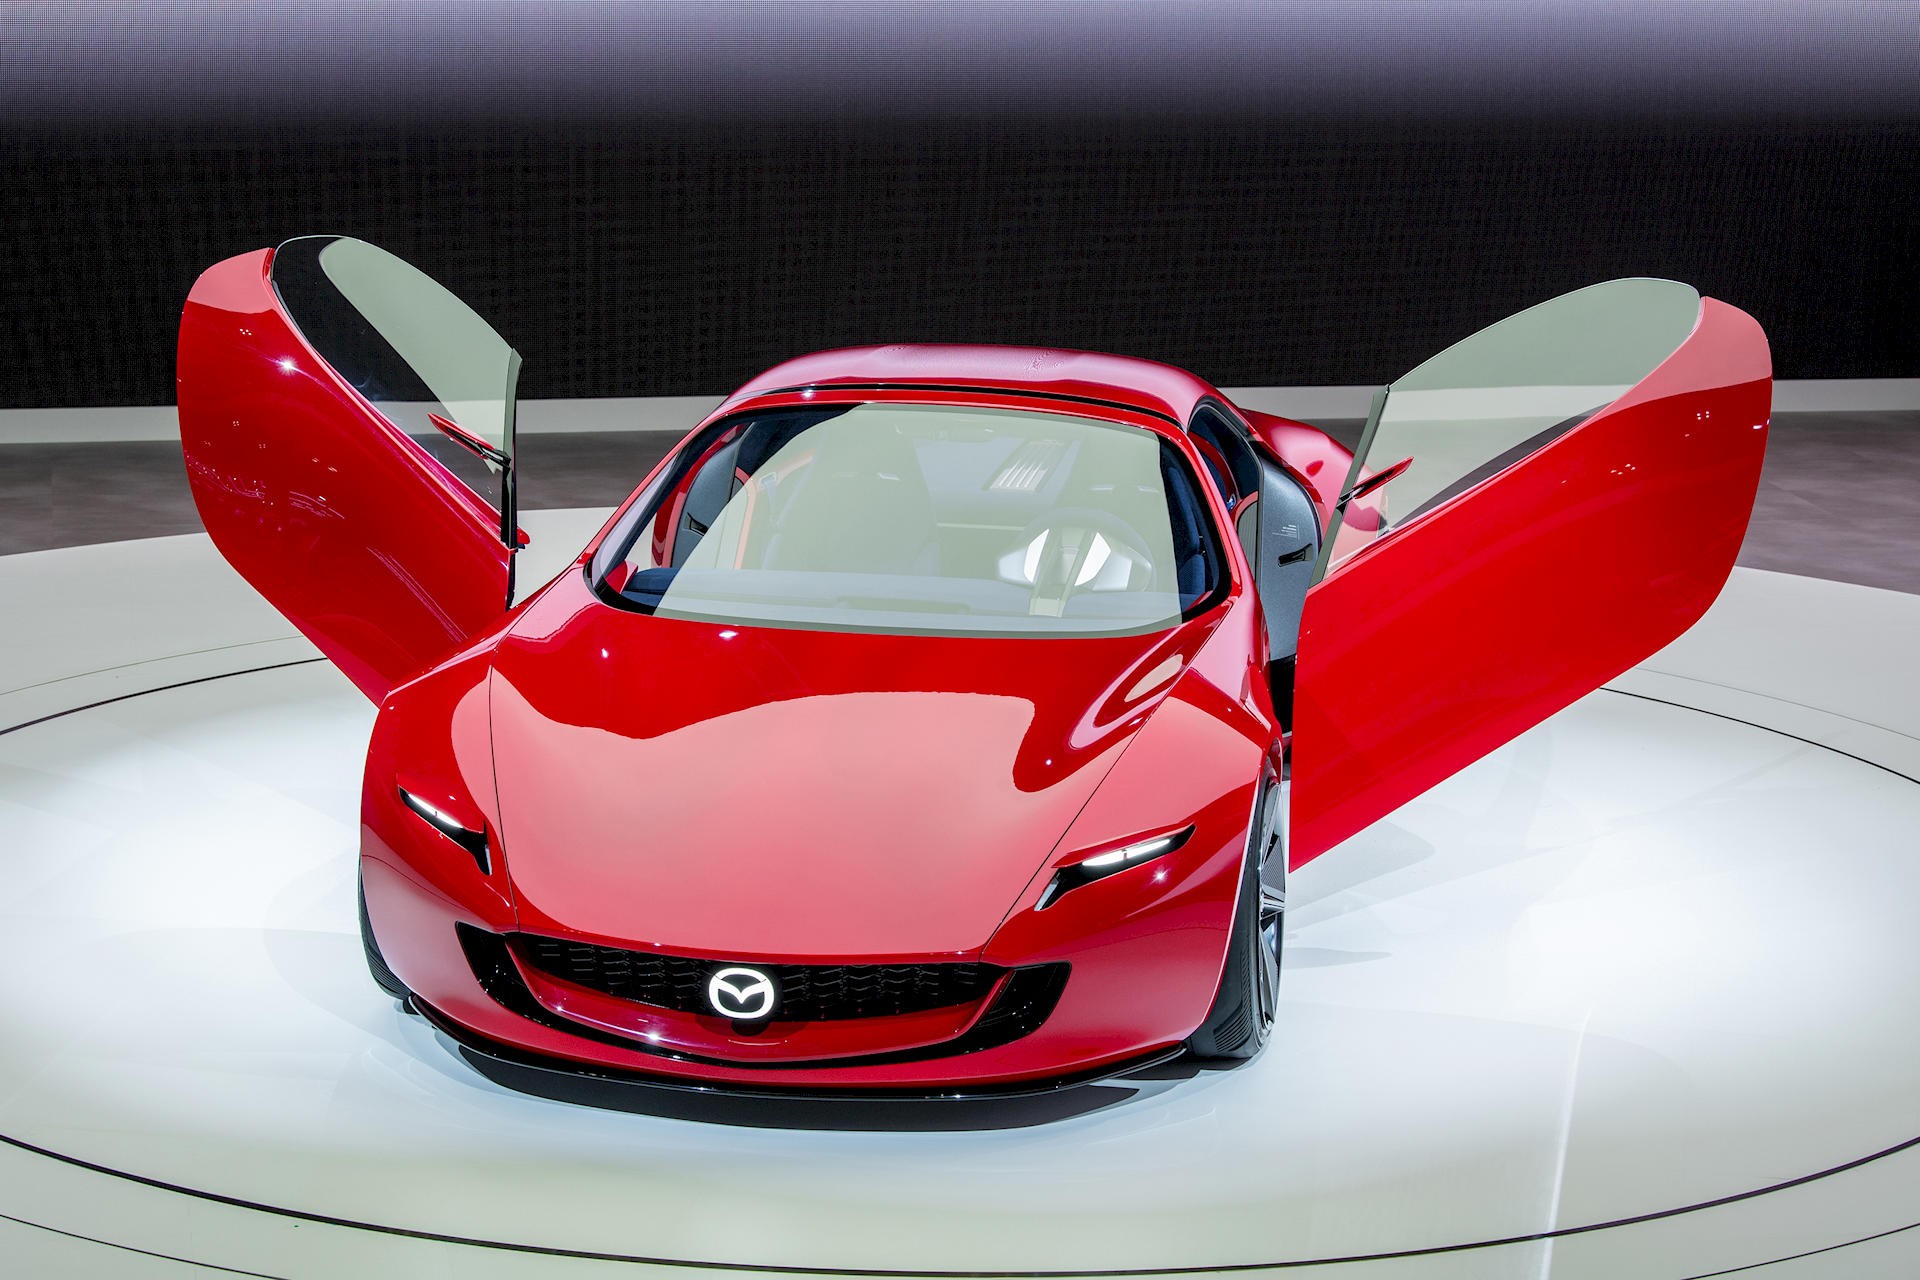 Mazda hồi sinh động cơ xoay với mẫu Iconic SP hybrid